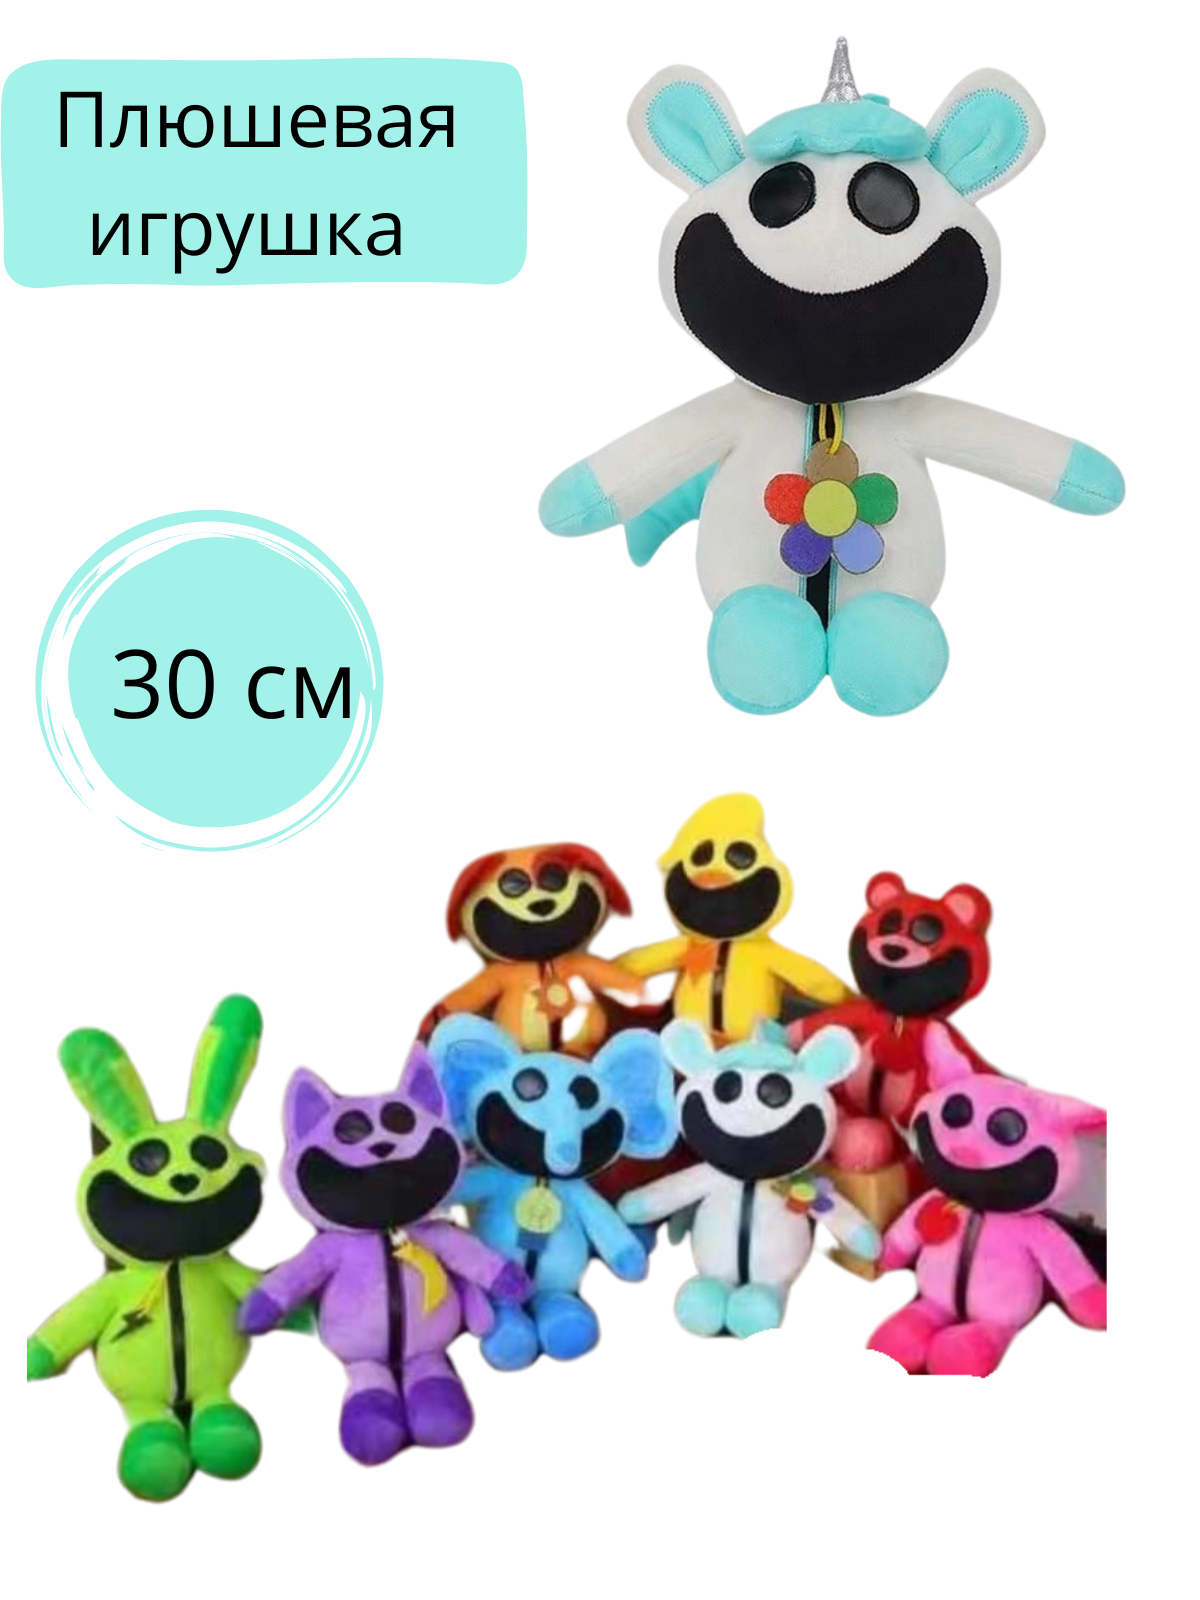 Мягкая плюшевая игрушка Poppy playtime Smiling Critters Kукла в качестве подарка для детей- 30см голубой